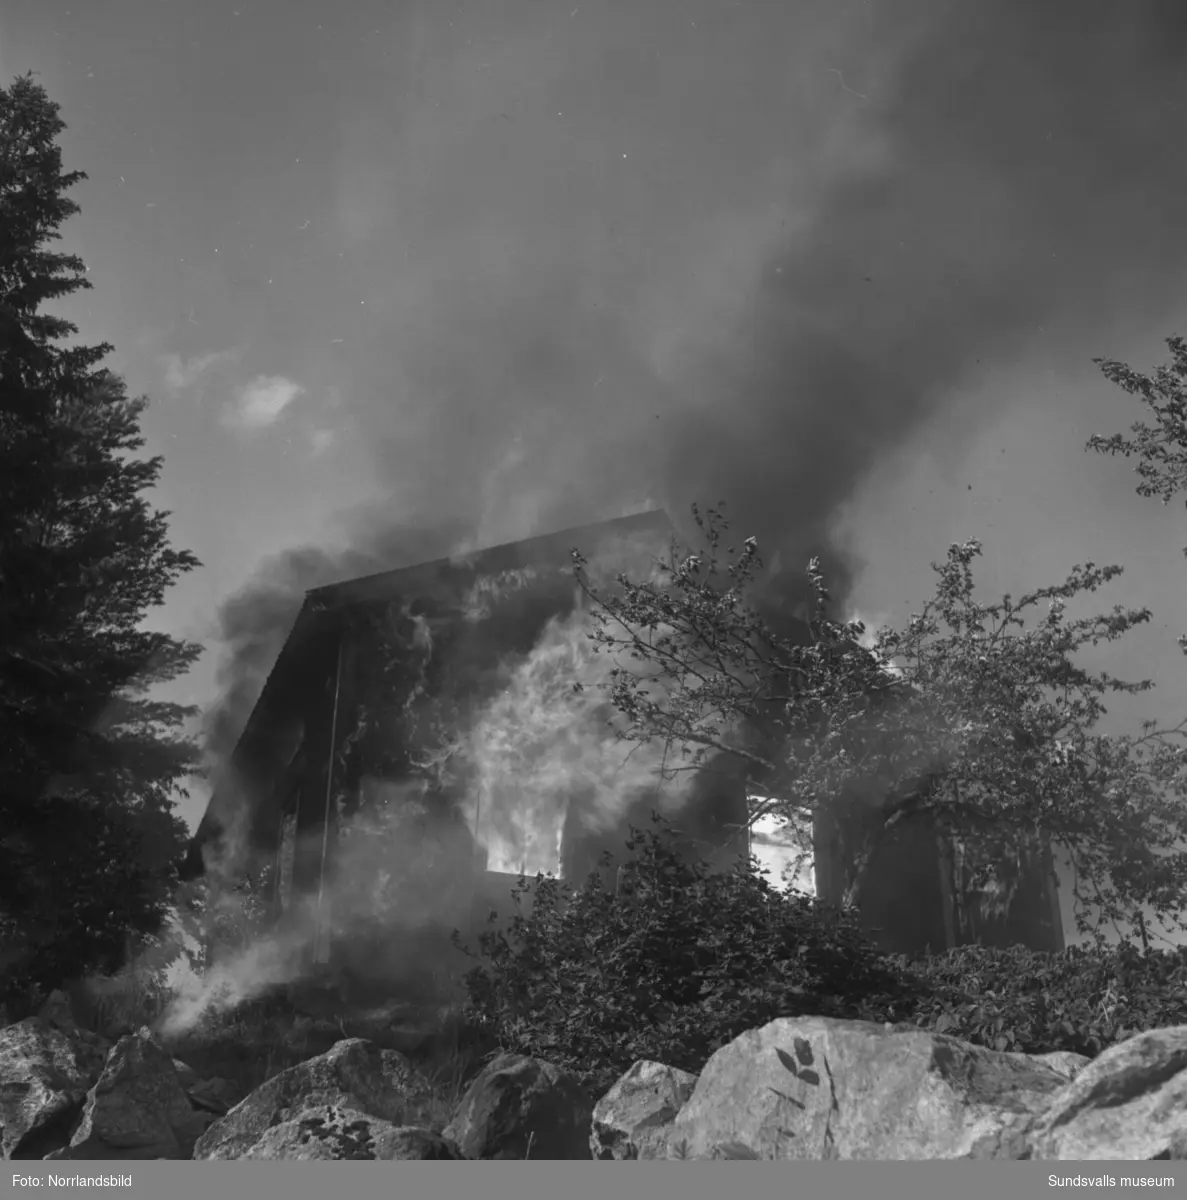 Tre byggnader slukades av elden i en våldsam brand i Allsta. Branden startade i hemmansägare Ture Lindboms ladugård och spred sig snabbt till ladugården hos Valdemar Dahlberg och sedan vidare till Dahlbergs bostadshus. Inga människor kom till skada men en häst och omkring 80 höns omkom i lågorna.